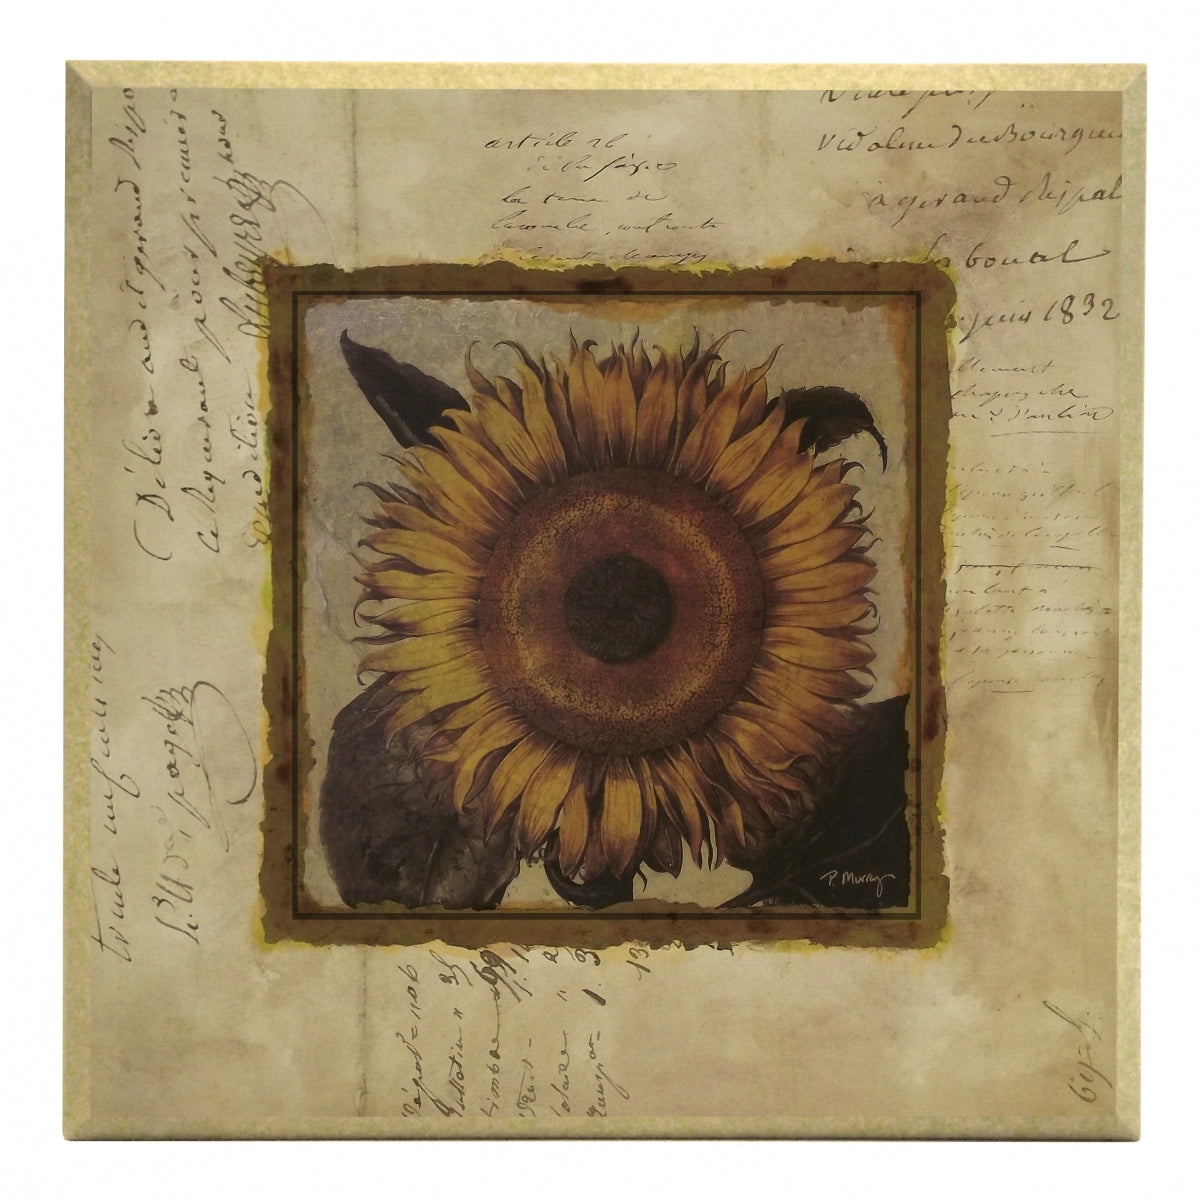 Obraz - Złota kolekcja - kwiaty, słonecznik - reprodukcja A2560 na płycie 31x31 cm. - Obrazy Reprodukcje Ramy | ergopaul.pl